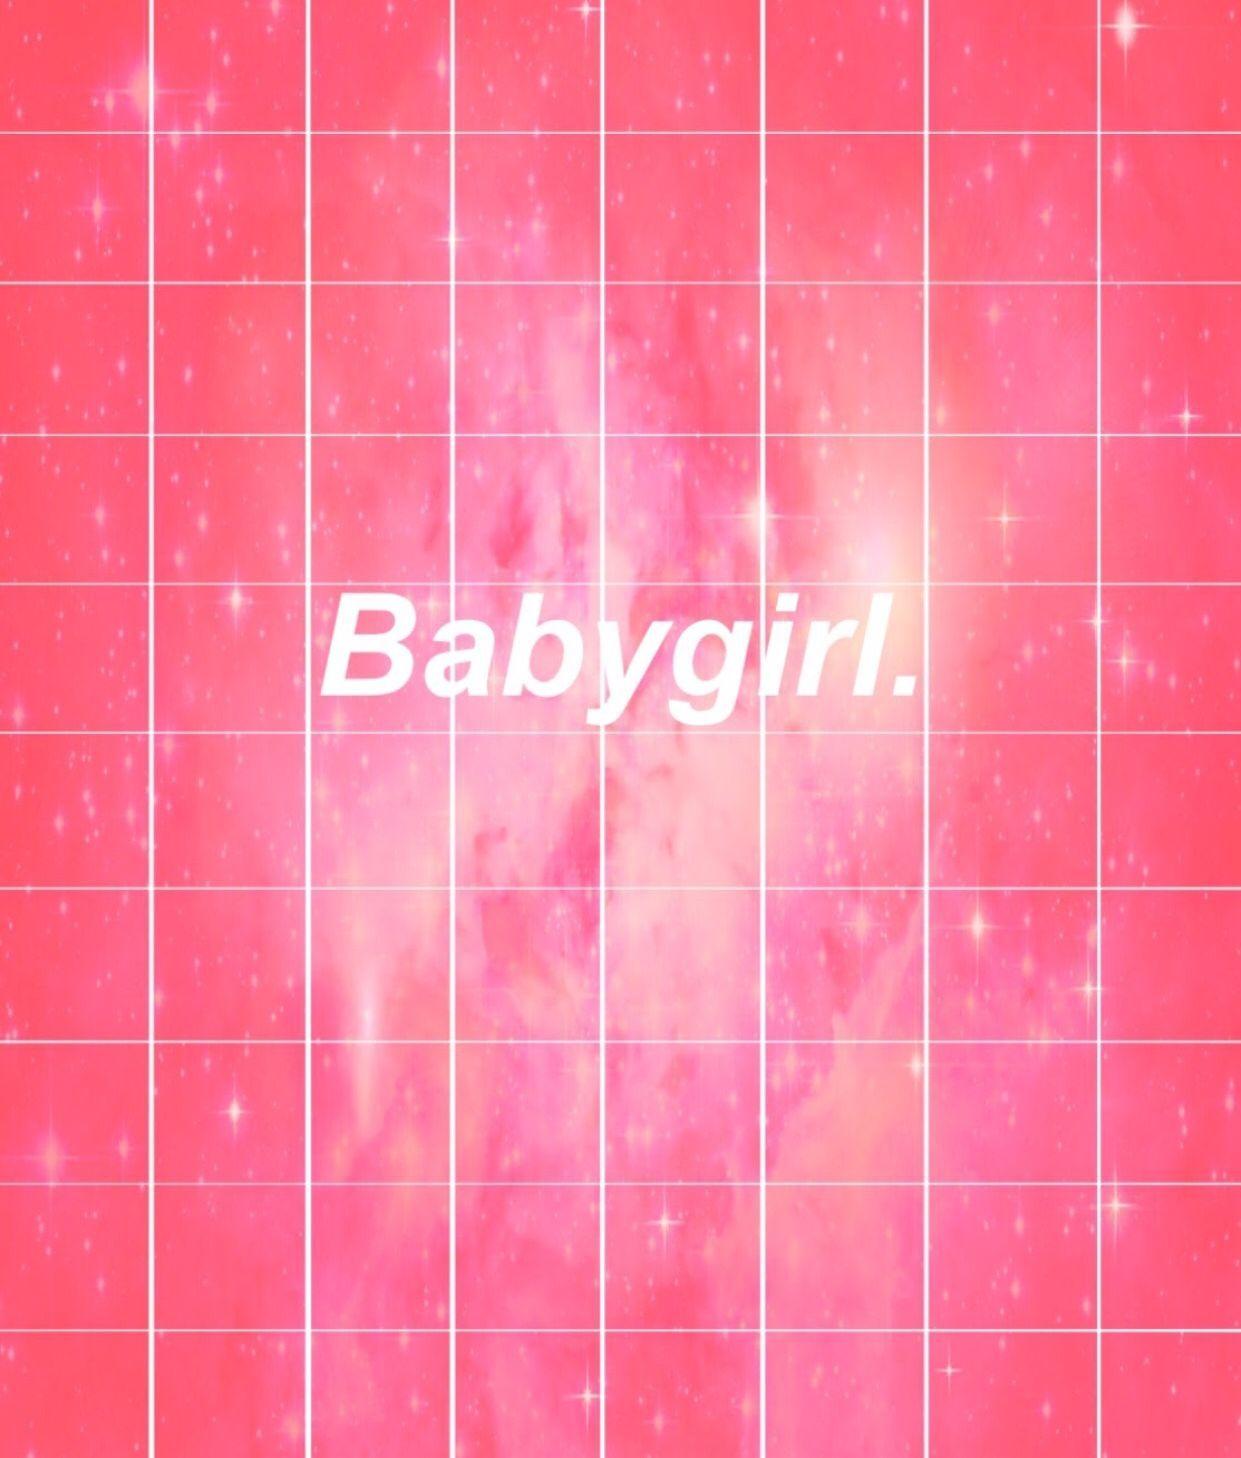 Baby Girl Aesthetic Wallpapers - Top Free Baby Girl ...